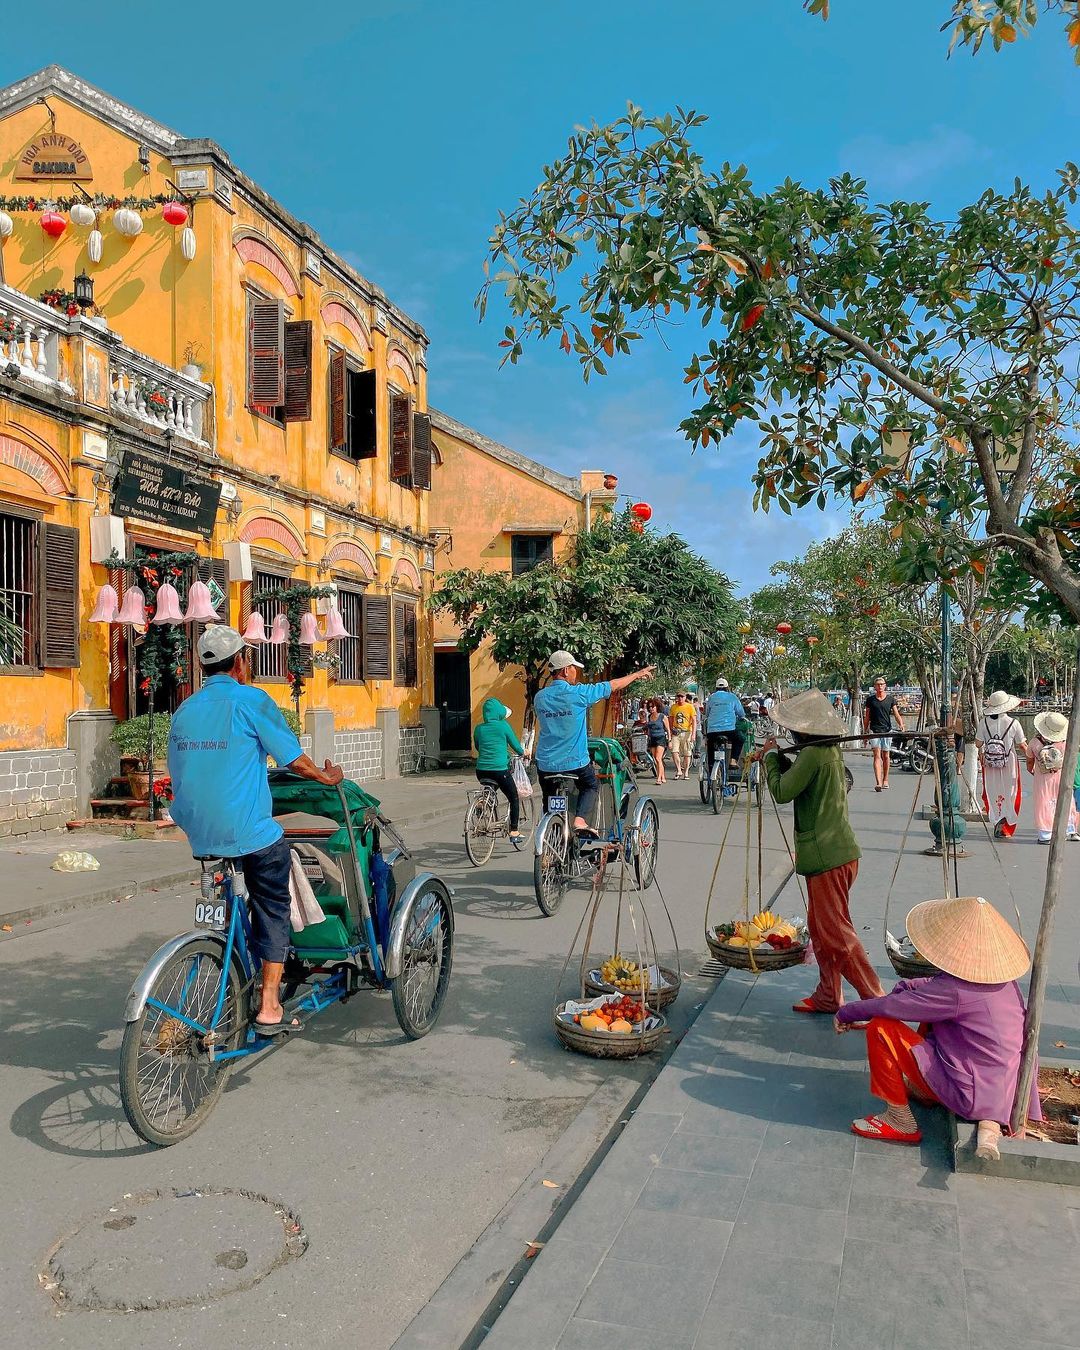 Hoi An Old Town – Quang Nam